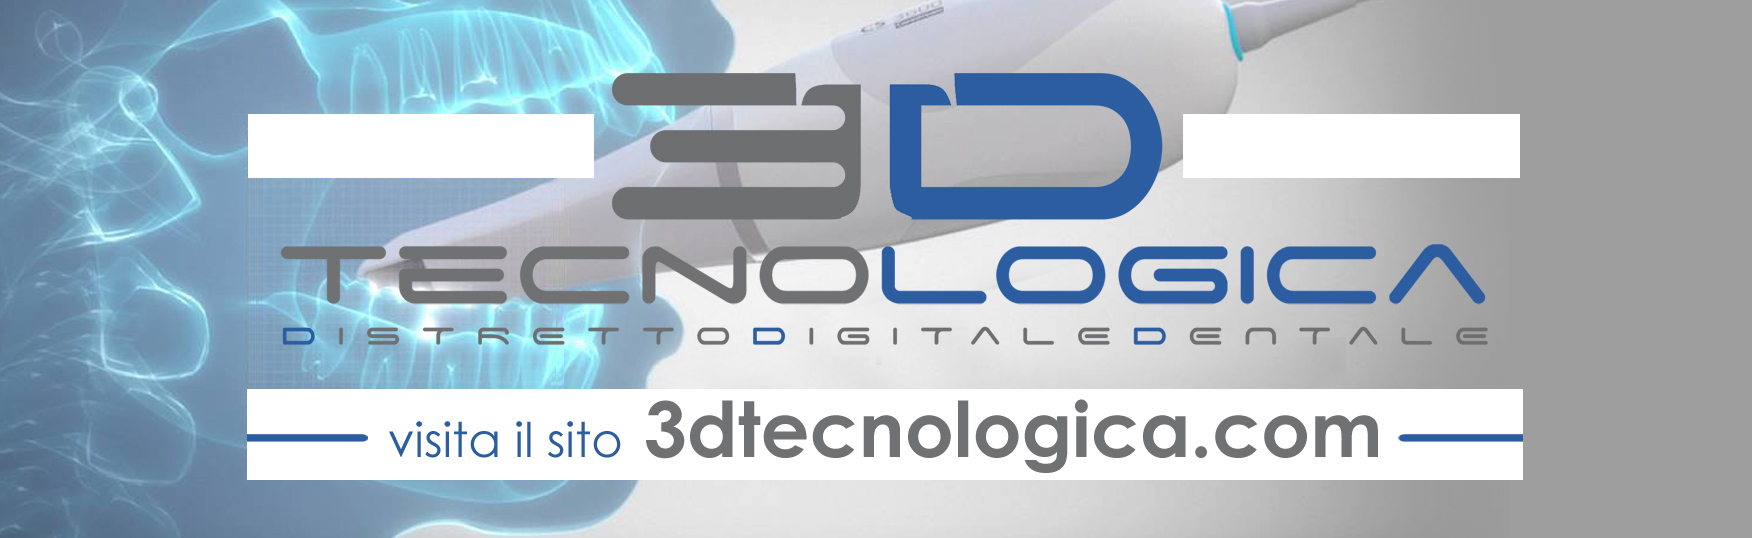 banner 3d tecnologica